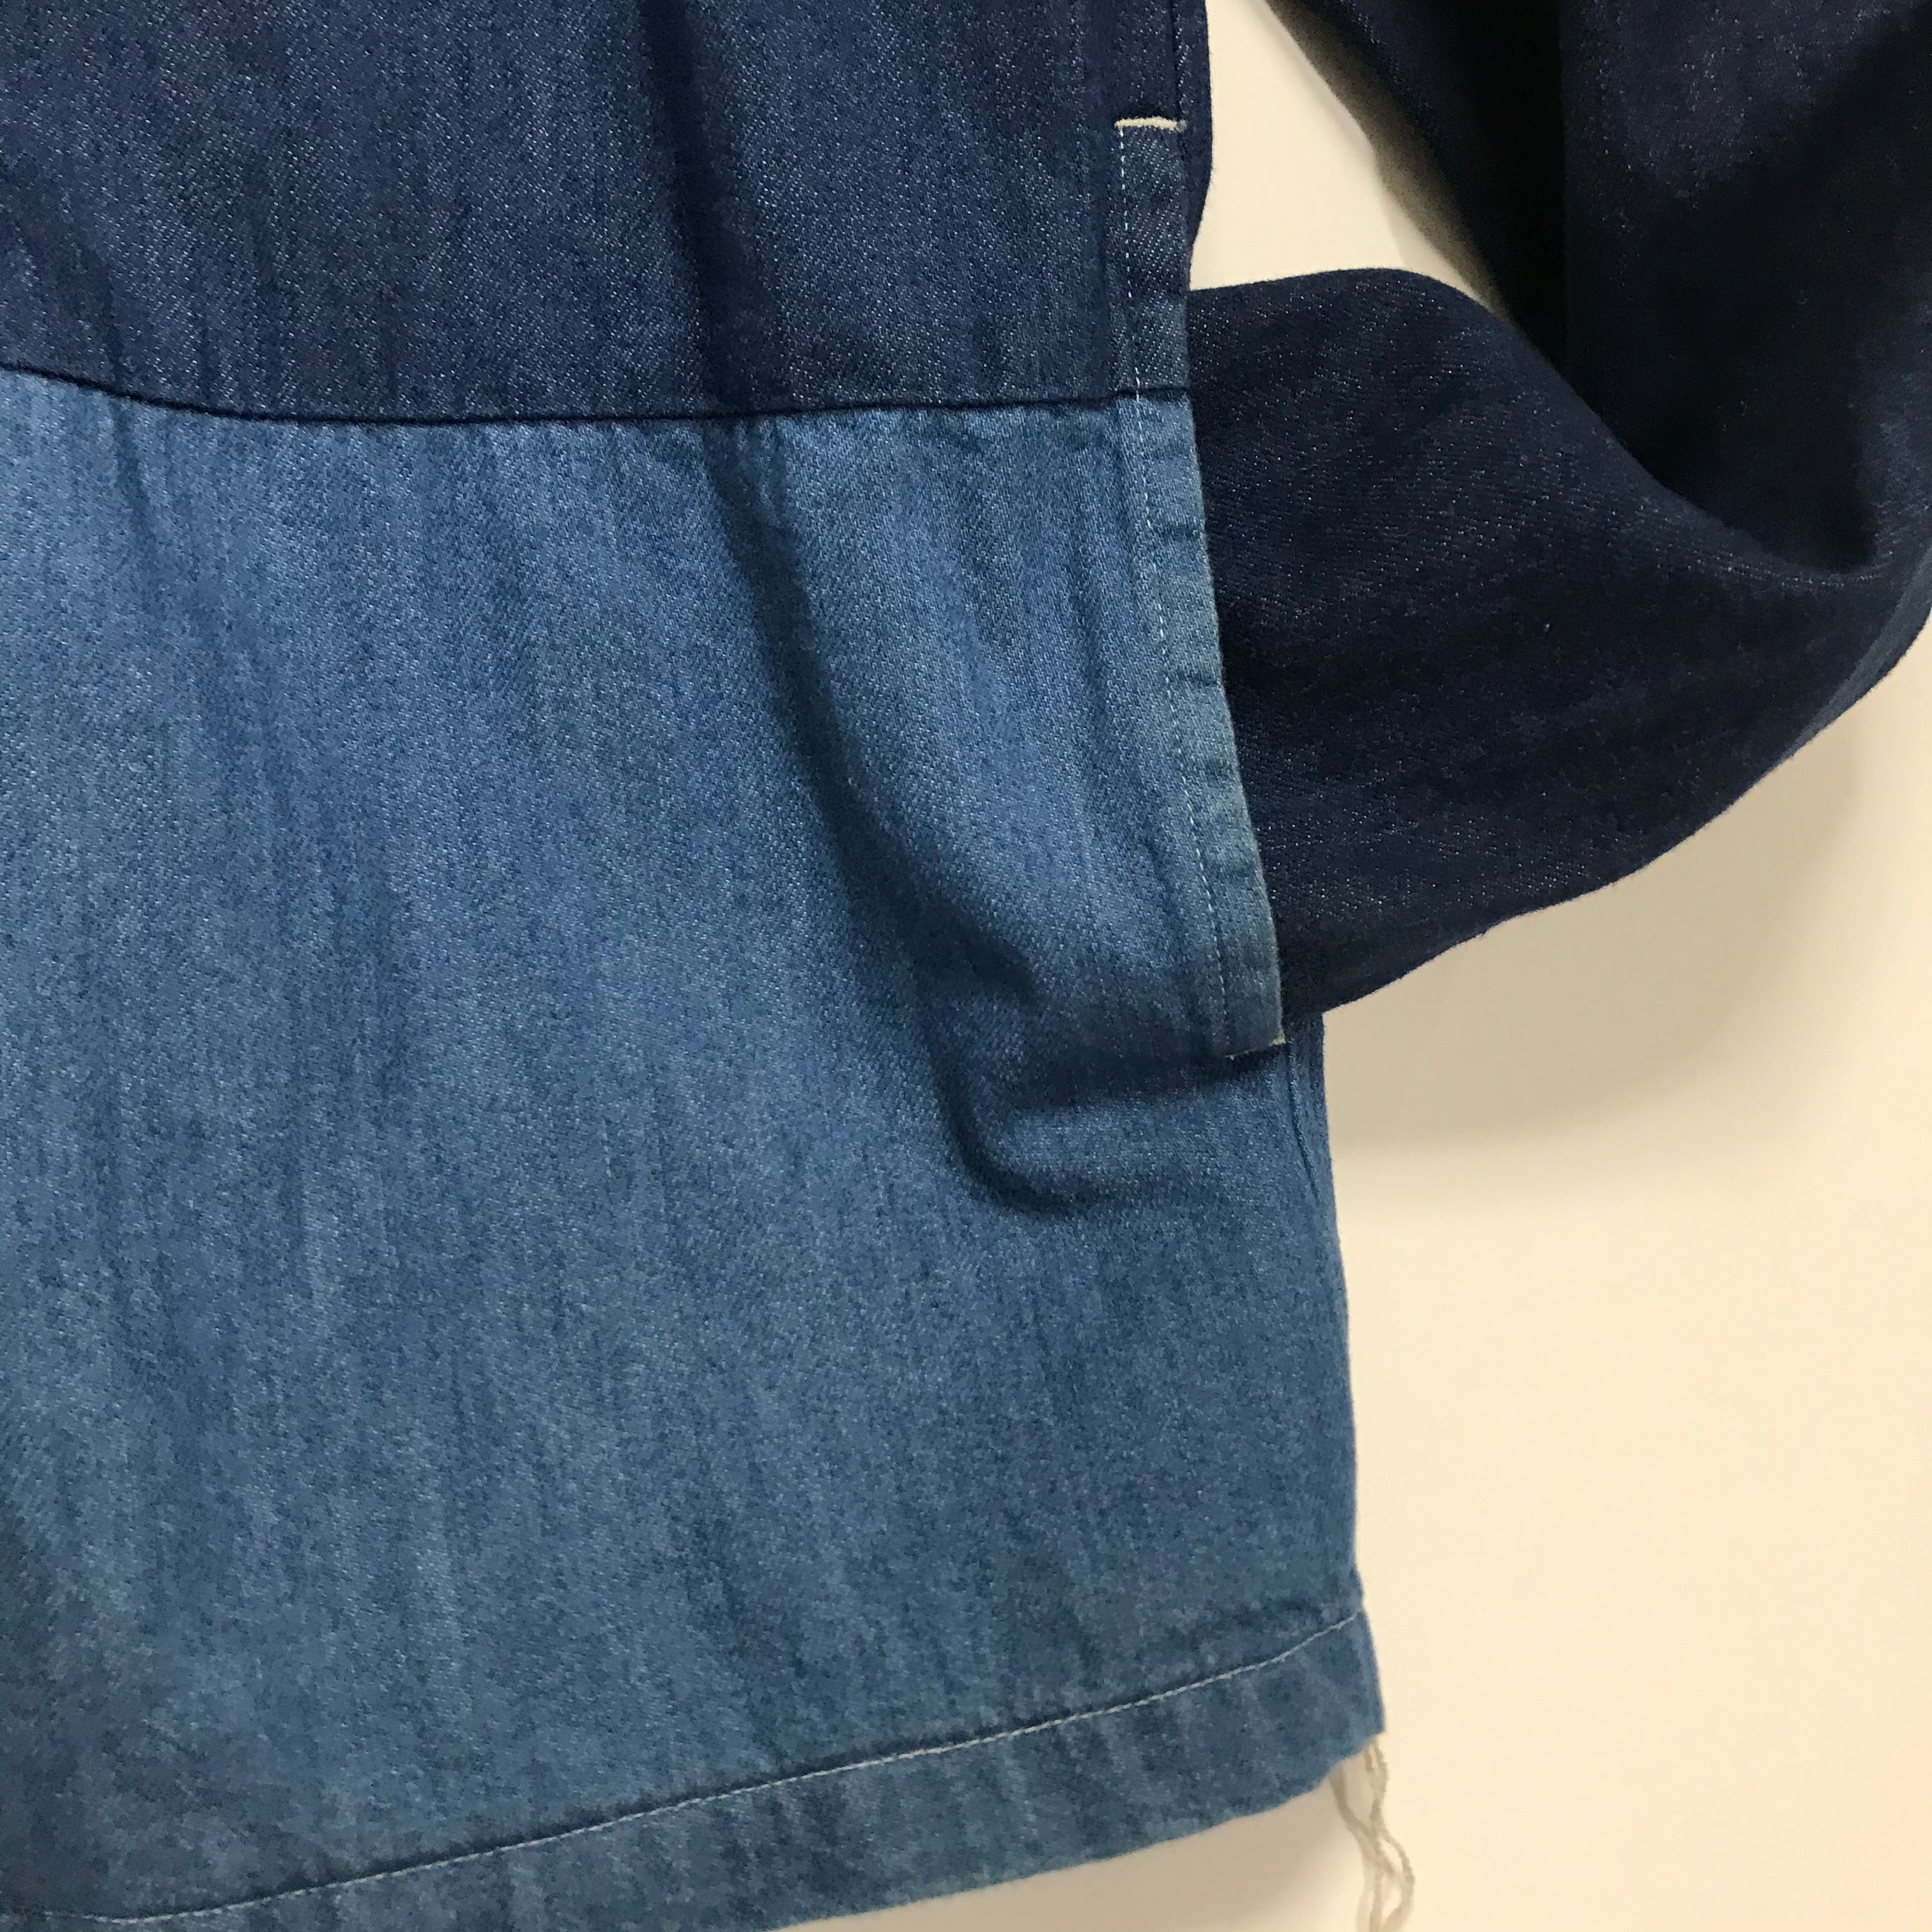 XL] Kapital 8oz Denim 4 Tone Kakashi Shirt Jacket